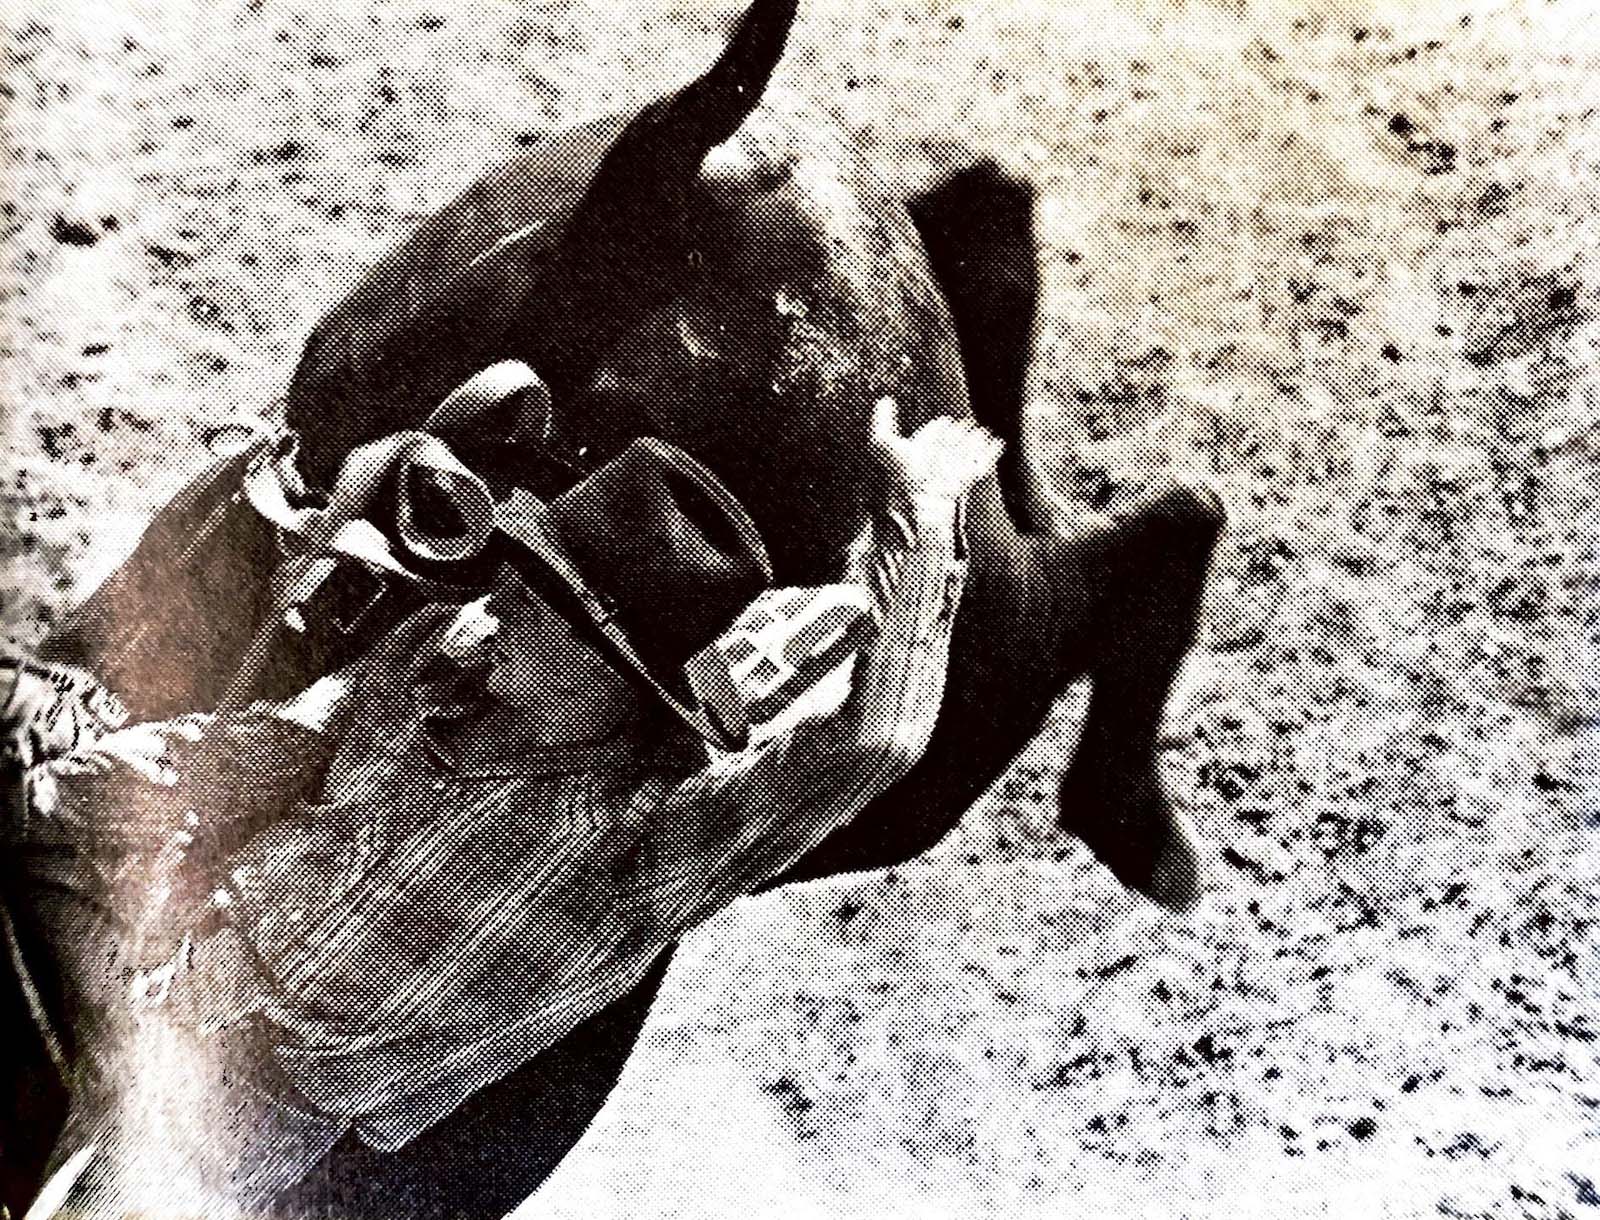 Cowboy getting bucked off a bull.